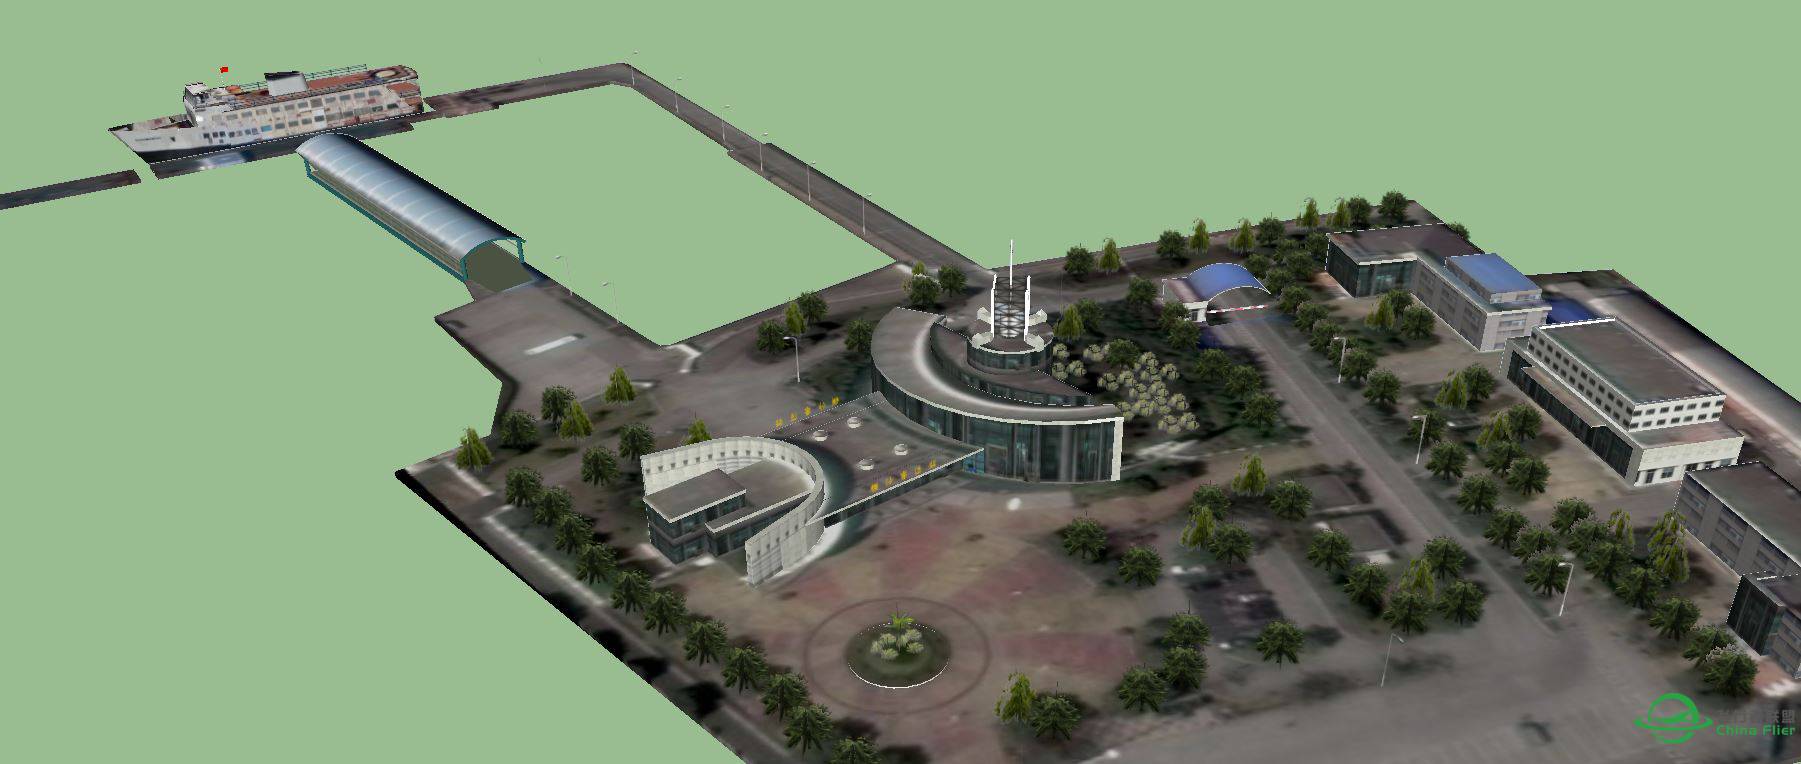 横沙岛地景的横沙客运码头建模完成-3556 